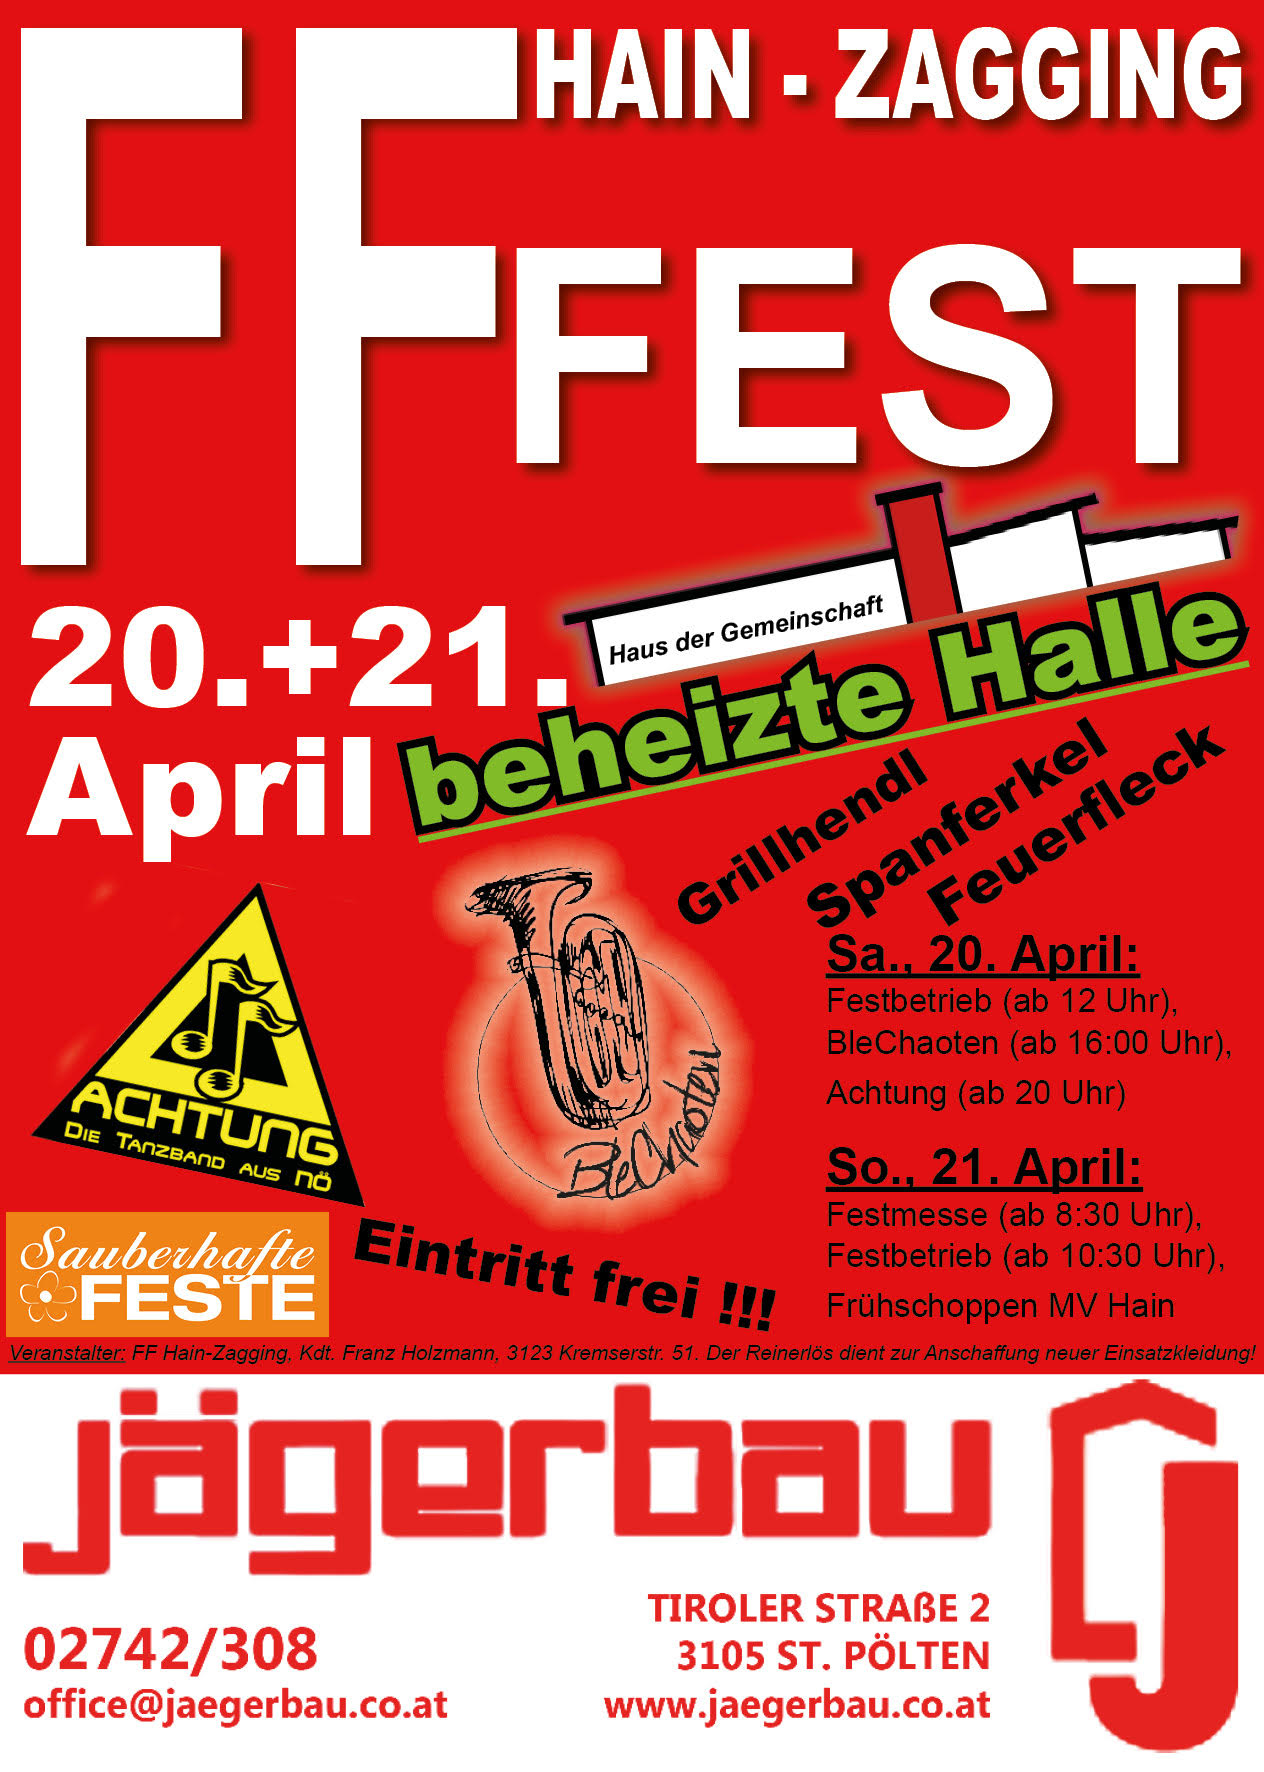 FF-Fest in geheizter Halle